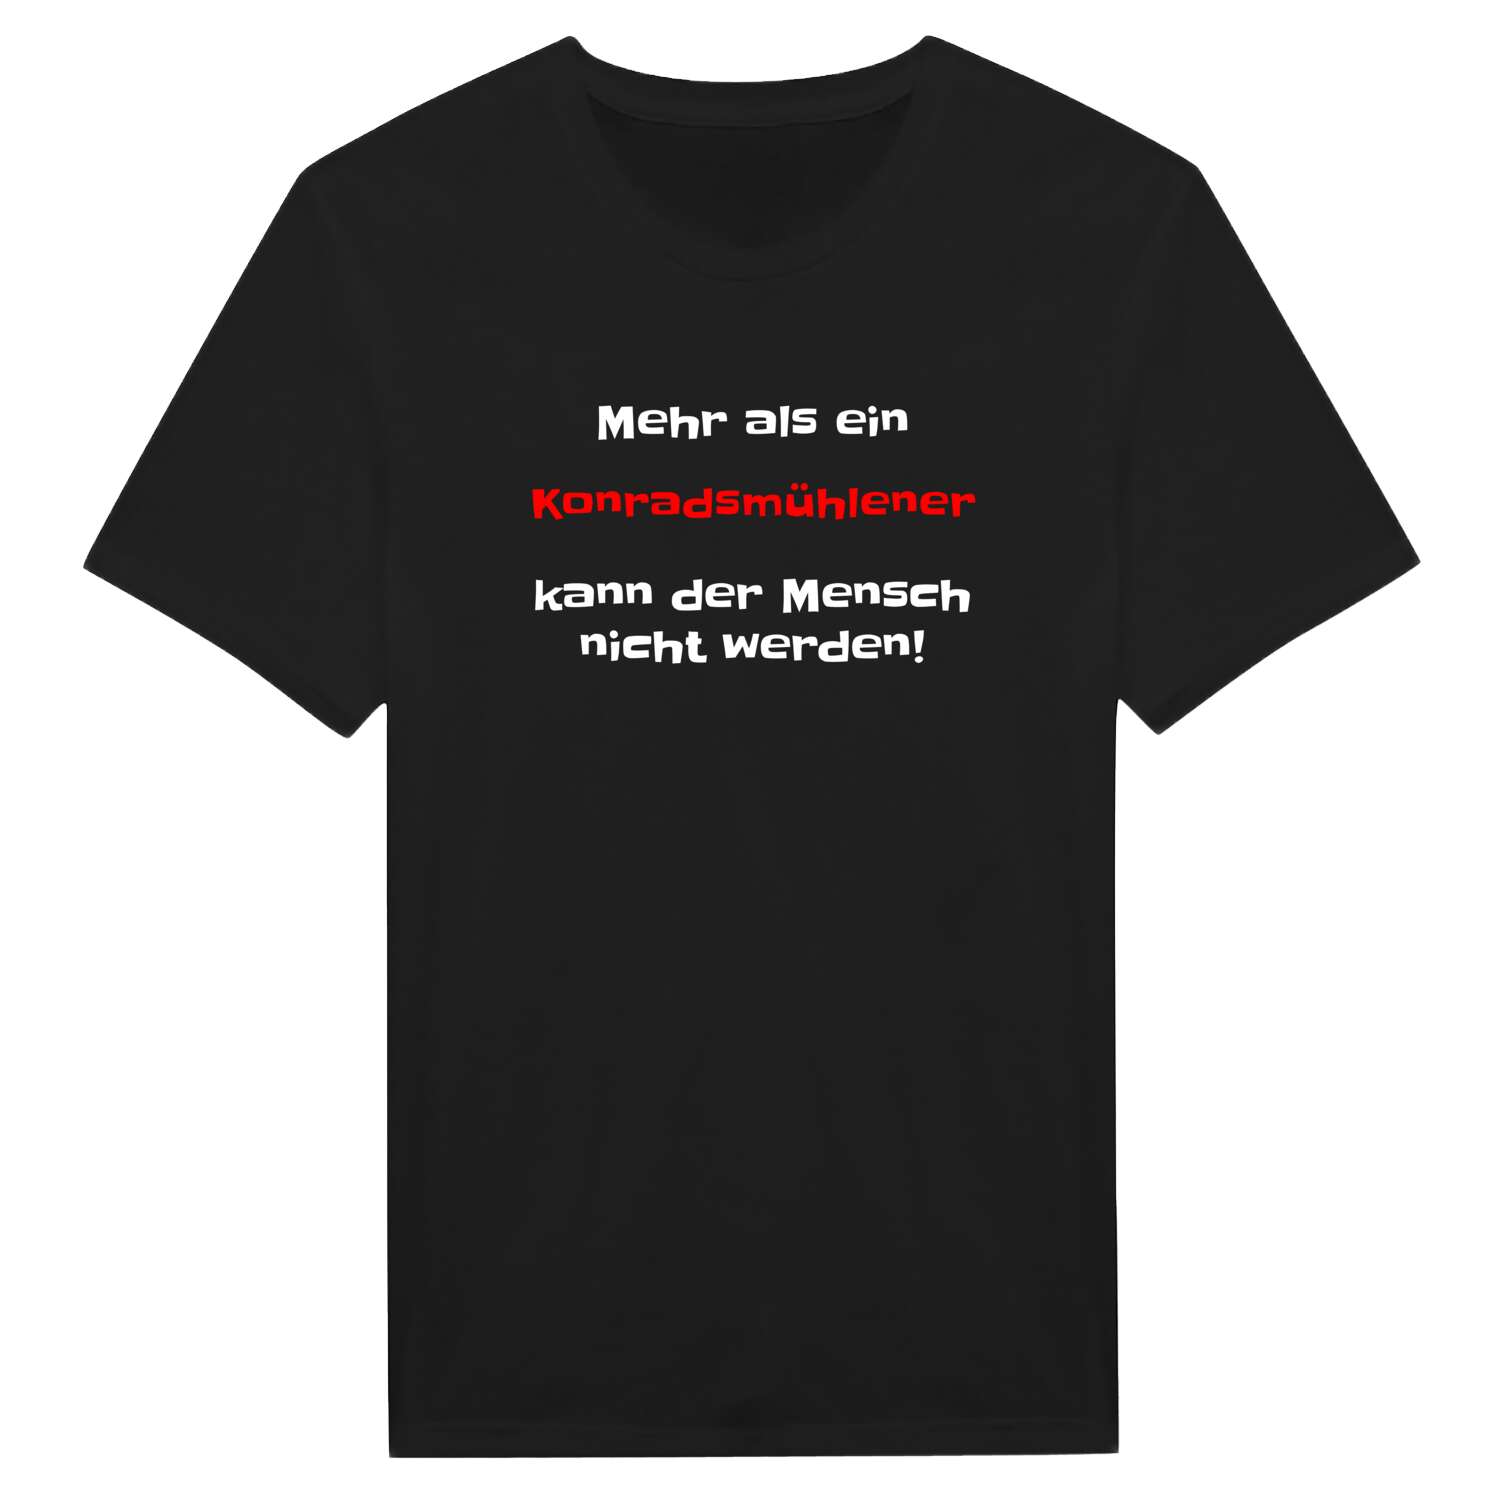 Konradsmühle T-Shirt »Mehr als ein«